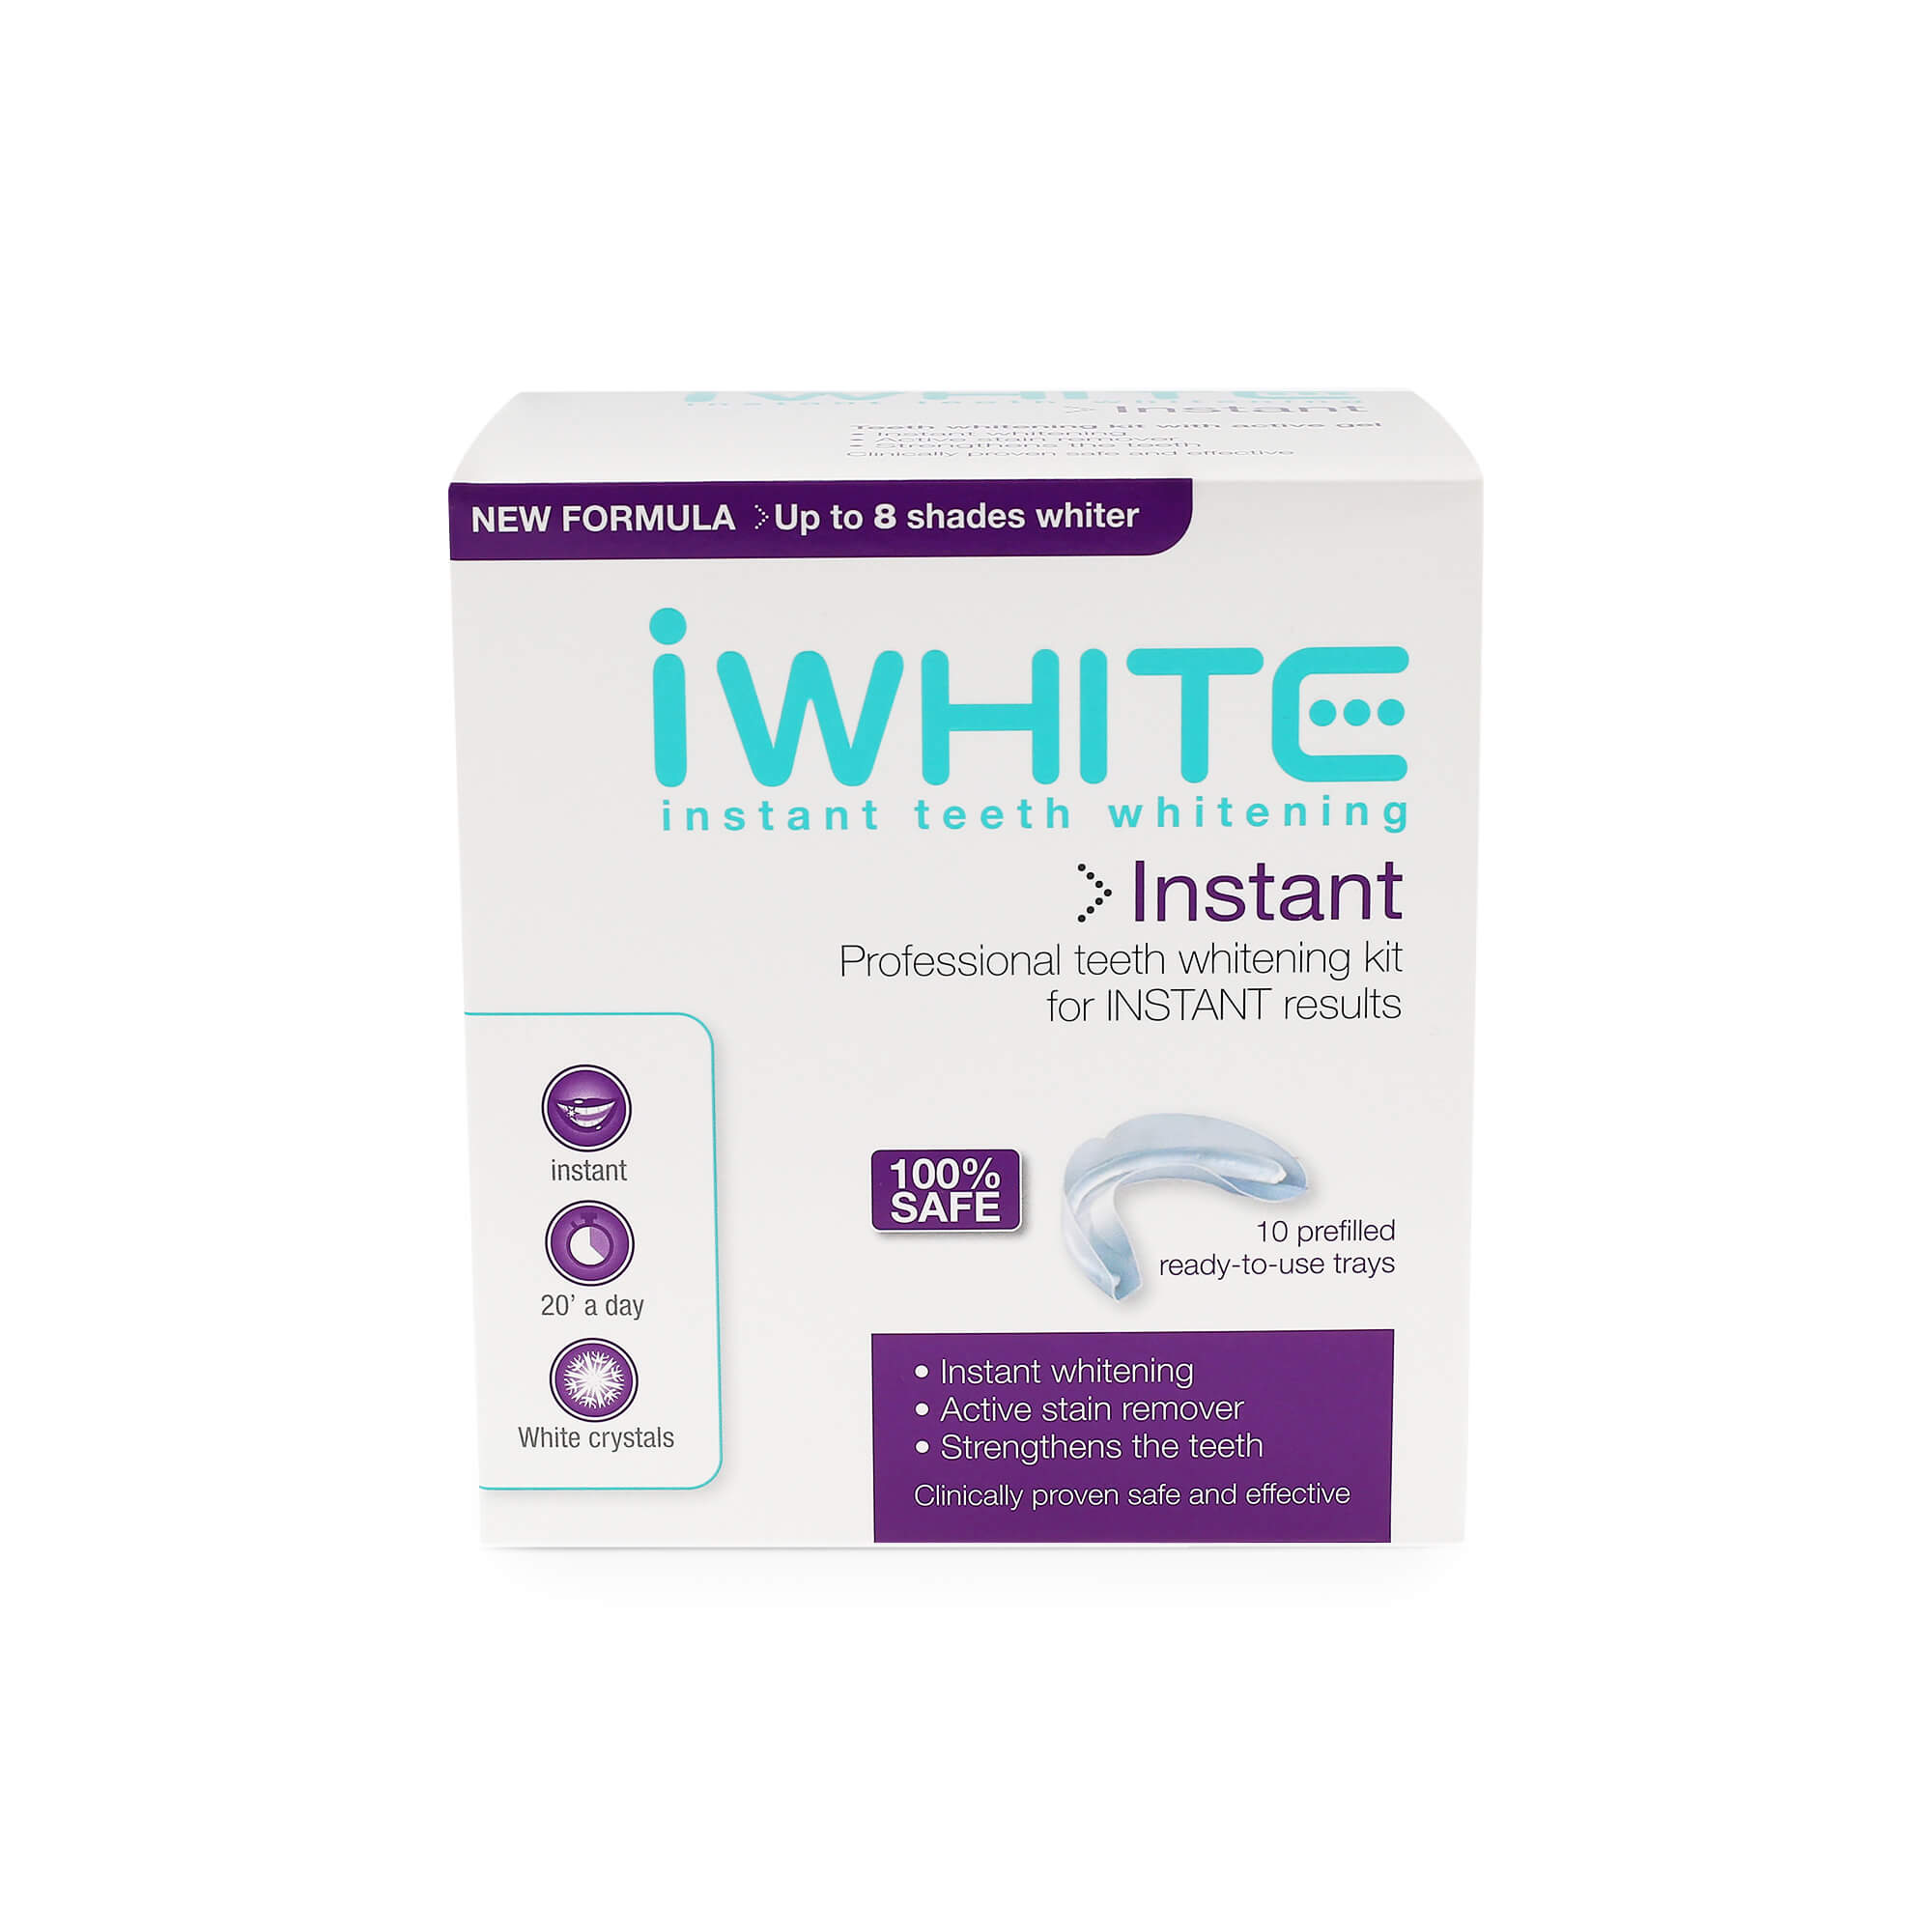 Instant whitening kit